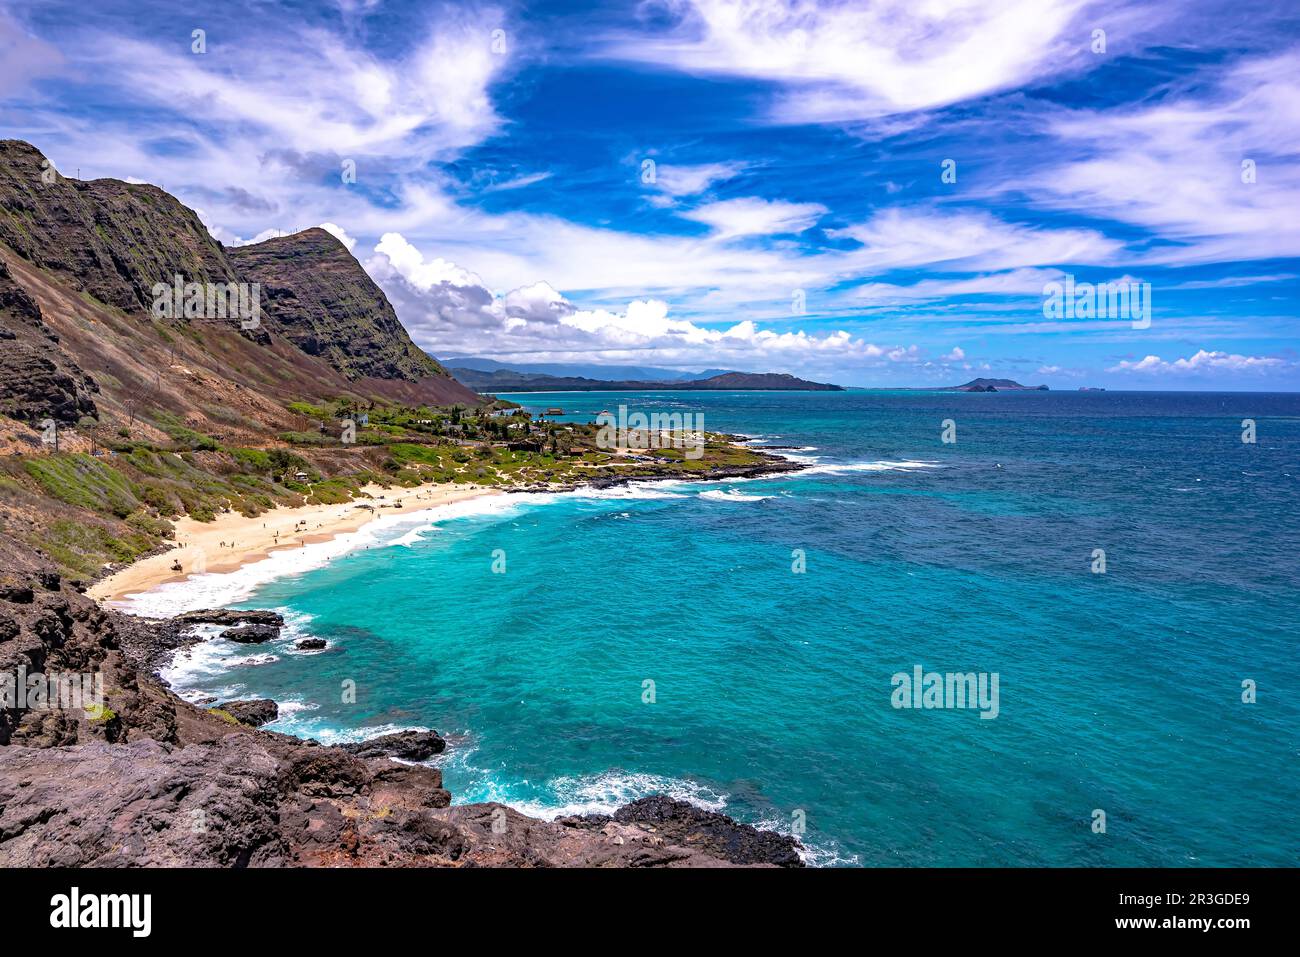 Makapuu Beach looking towards Waimanalo Bay on the Windward coast of Oahu, Hawaii. Stock Photo